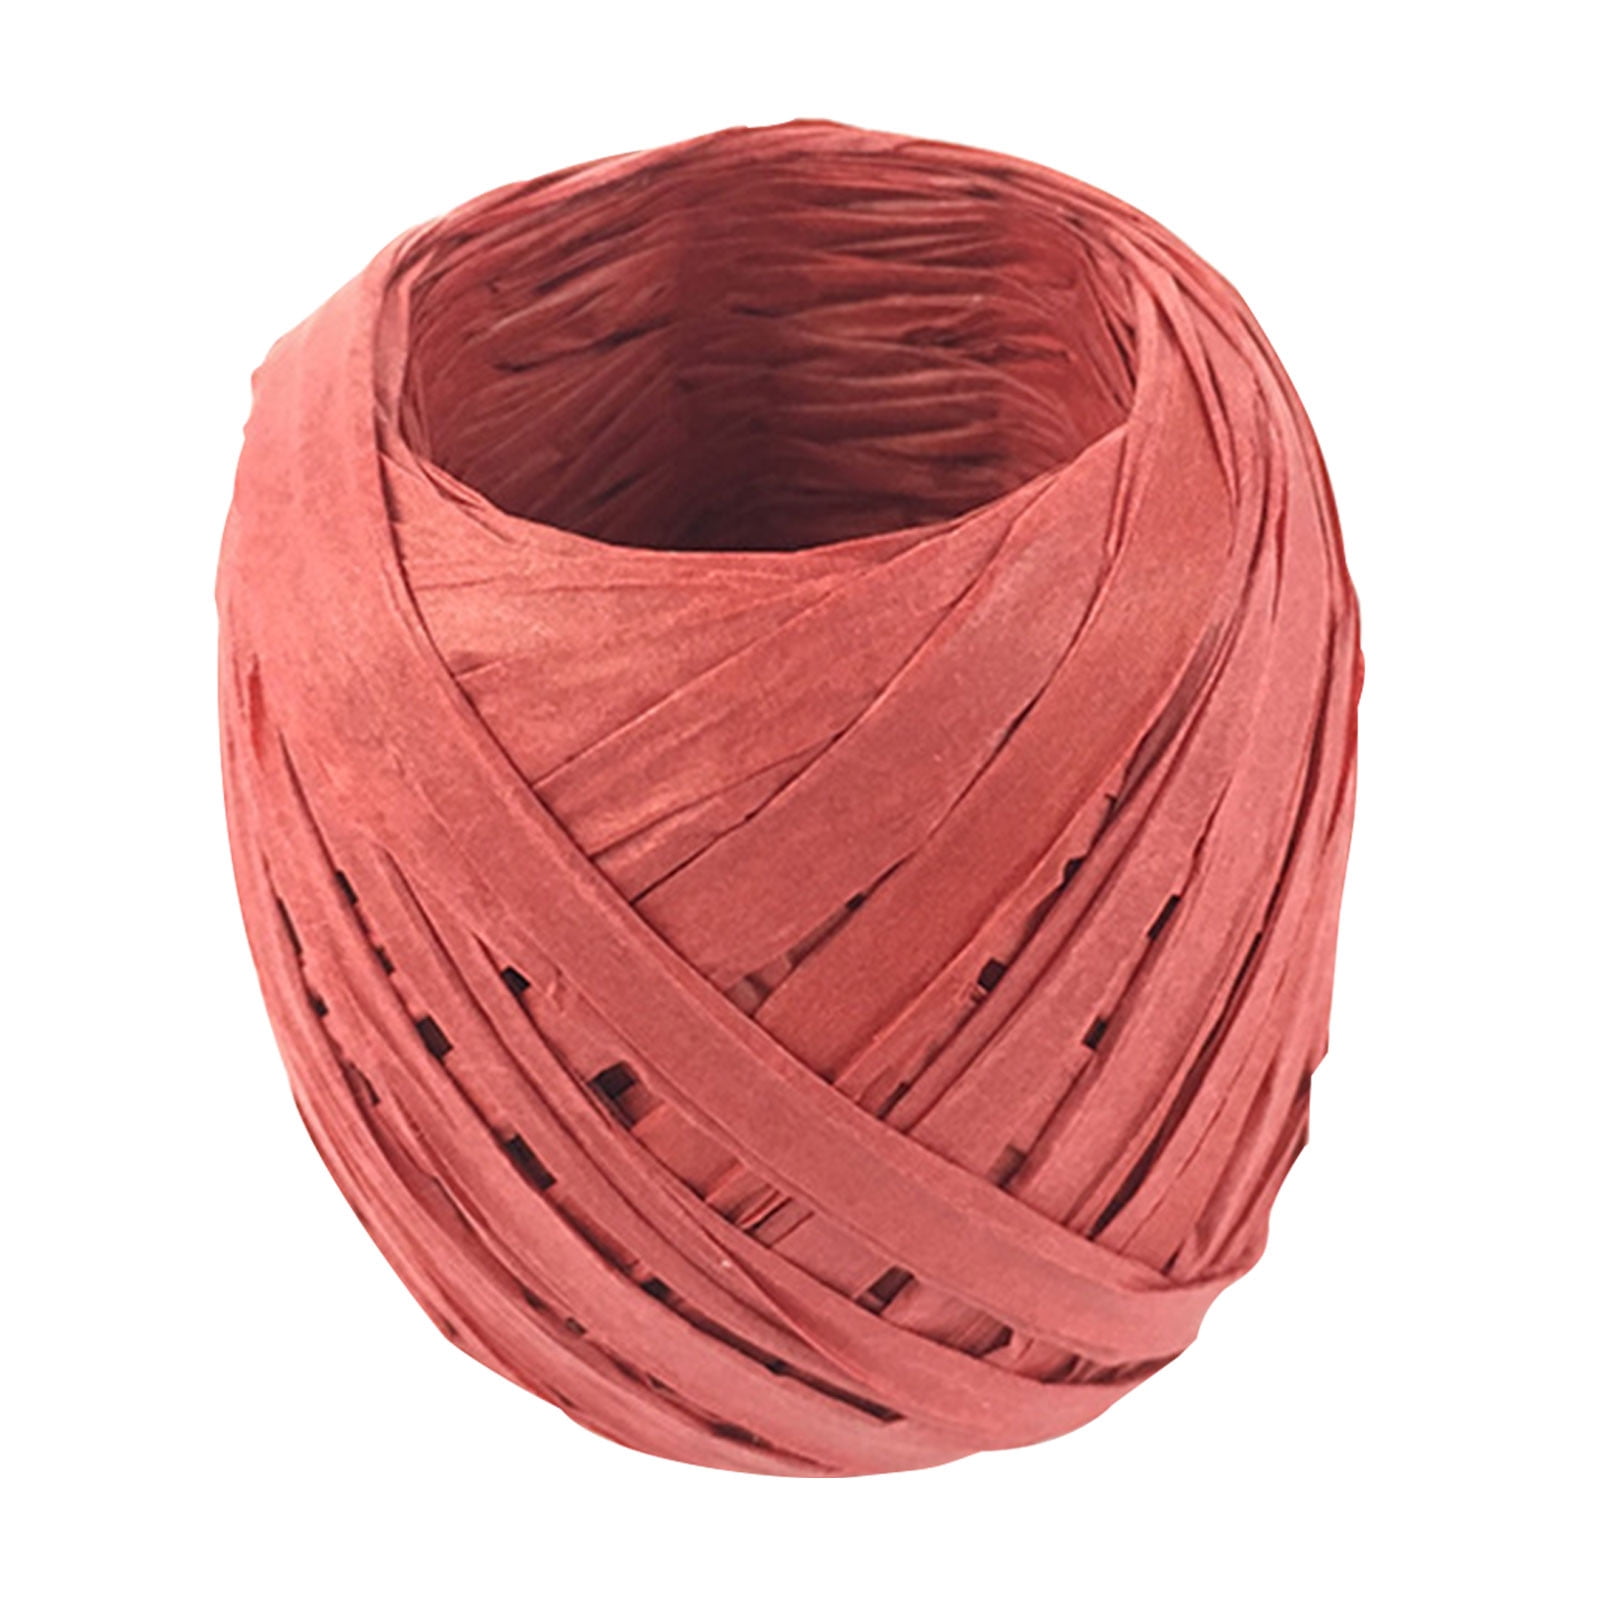 Raffia Ribbon Yarn - Color Crazy